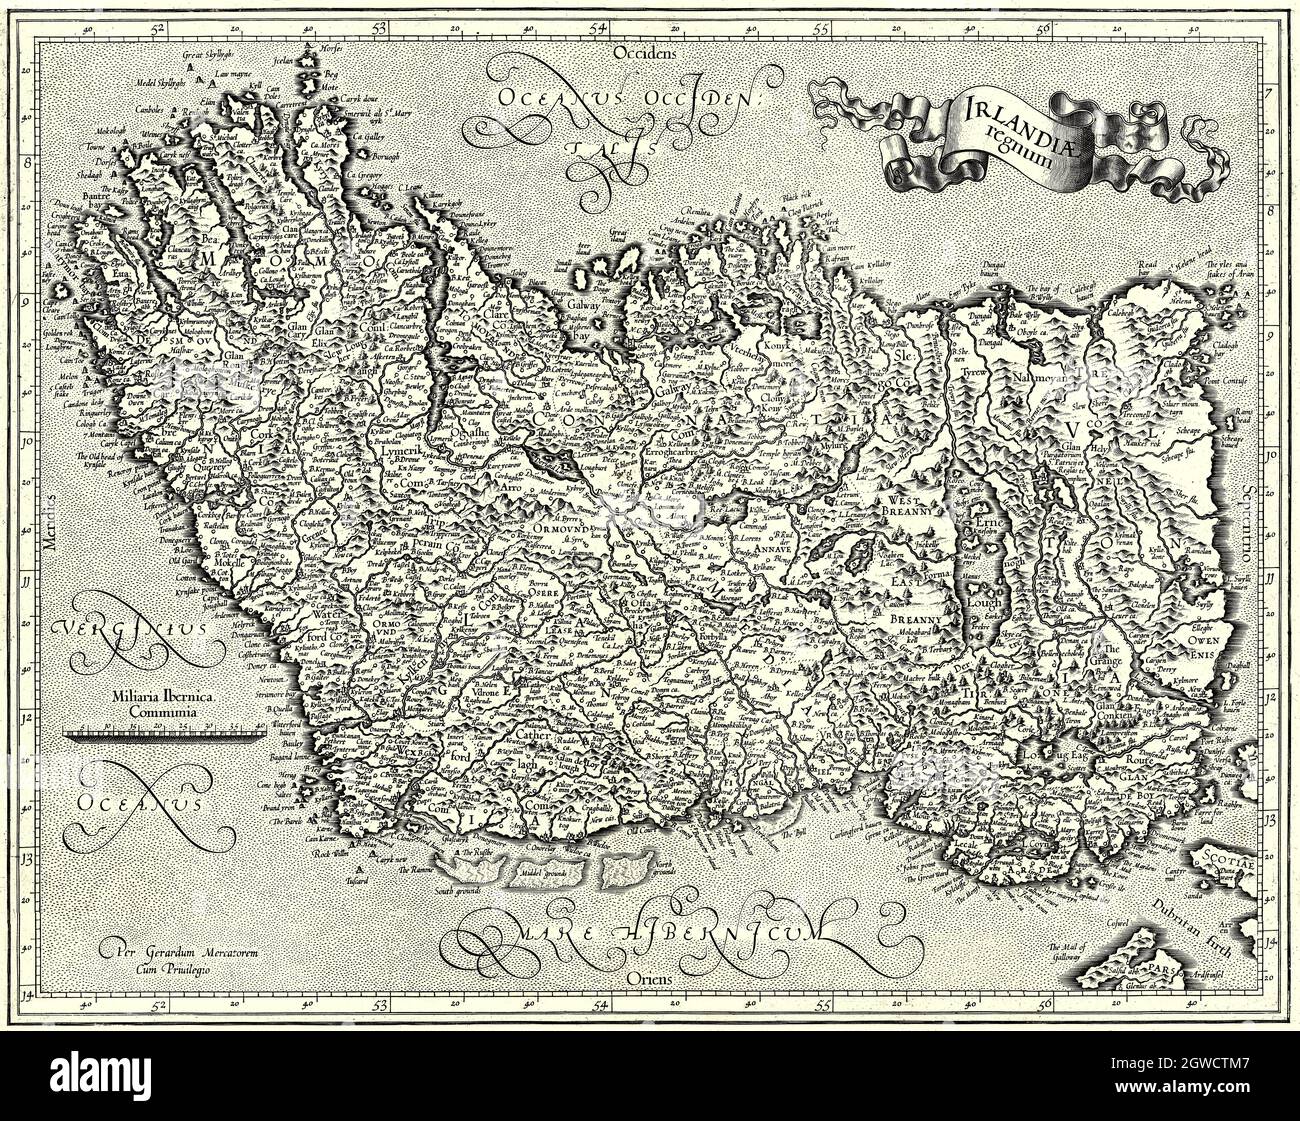 'Irlandiae regnum' ou Royaume d'Irlande. La carte est en latin et se trouve avec sa côte nord à l'ouest. La carte, a été créée à la fin du XVIe siècle par Gerardus Mercator (1512-1594), géographe, cosmographe et cartographe du XVIe siècle du comté de Flandre, renommé pour la création de la carte du monde 1569 basée sur une nouvelle projection qui représentait des cours de voile à azimut constant comme des lignes droites une innovation encore employée dans les cartes nautiques. Banque D'Images